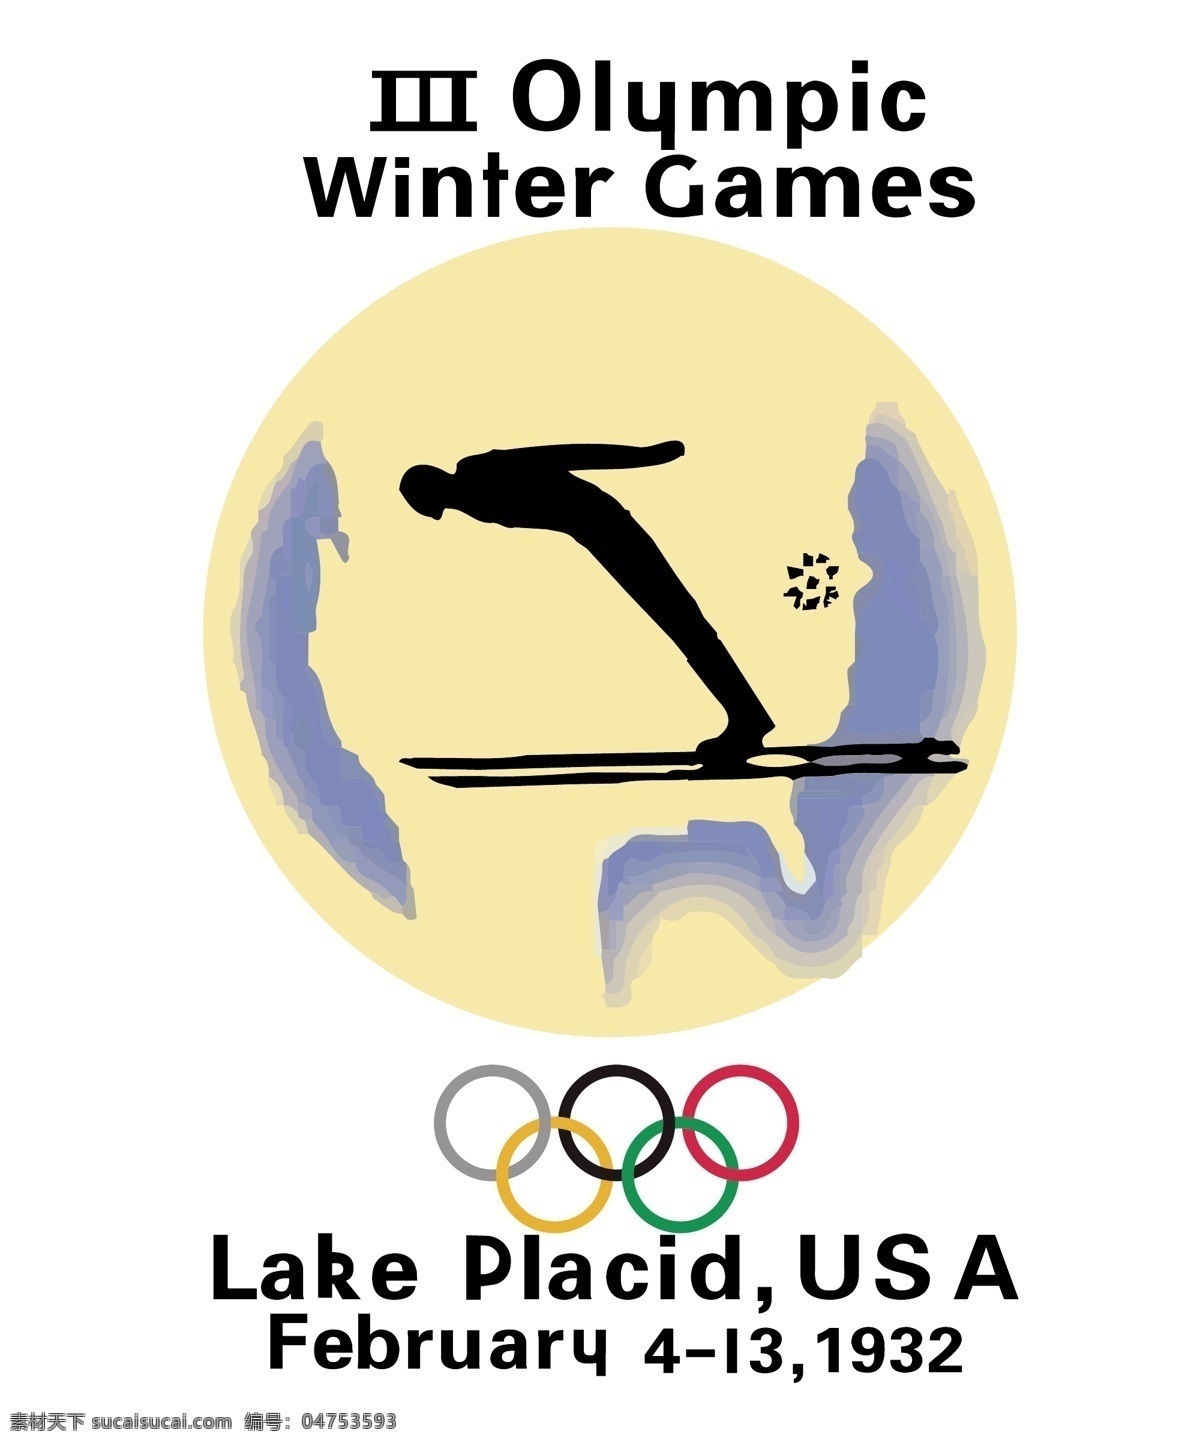 第三届 美国 普莱 西德 湖 冬奥会 冬季 奥林匹克运动会 1932 年 月 日至 日 举行 会奥会会标